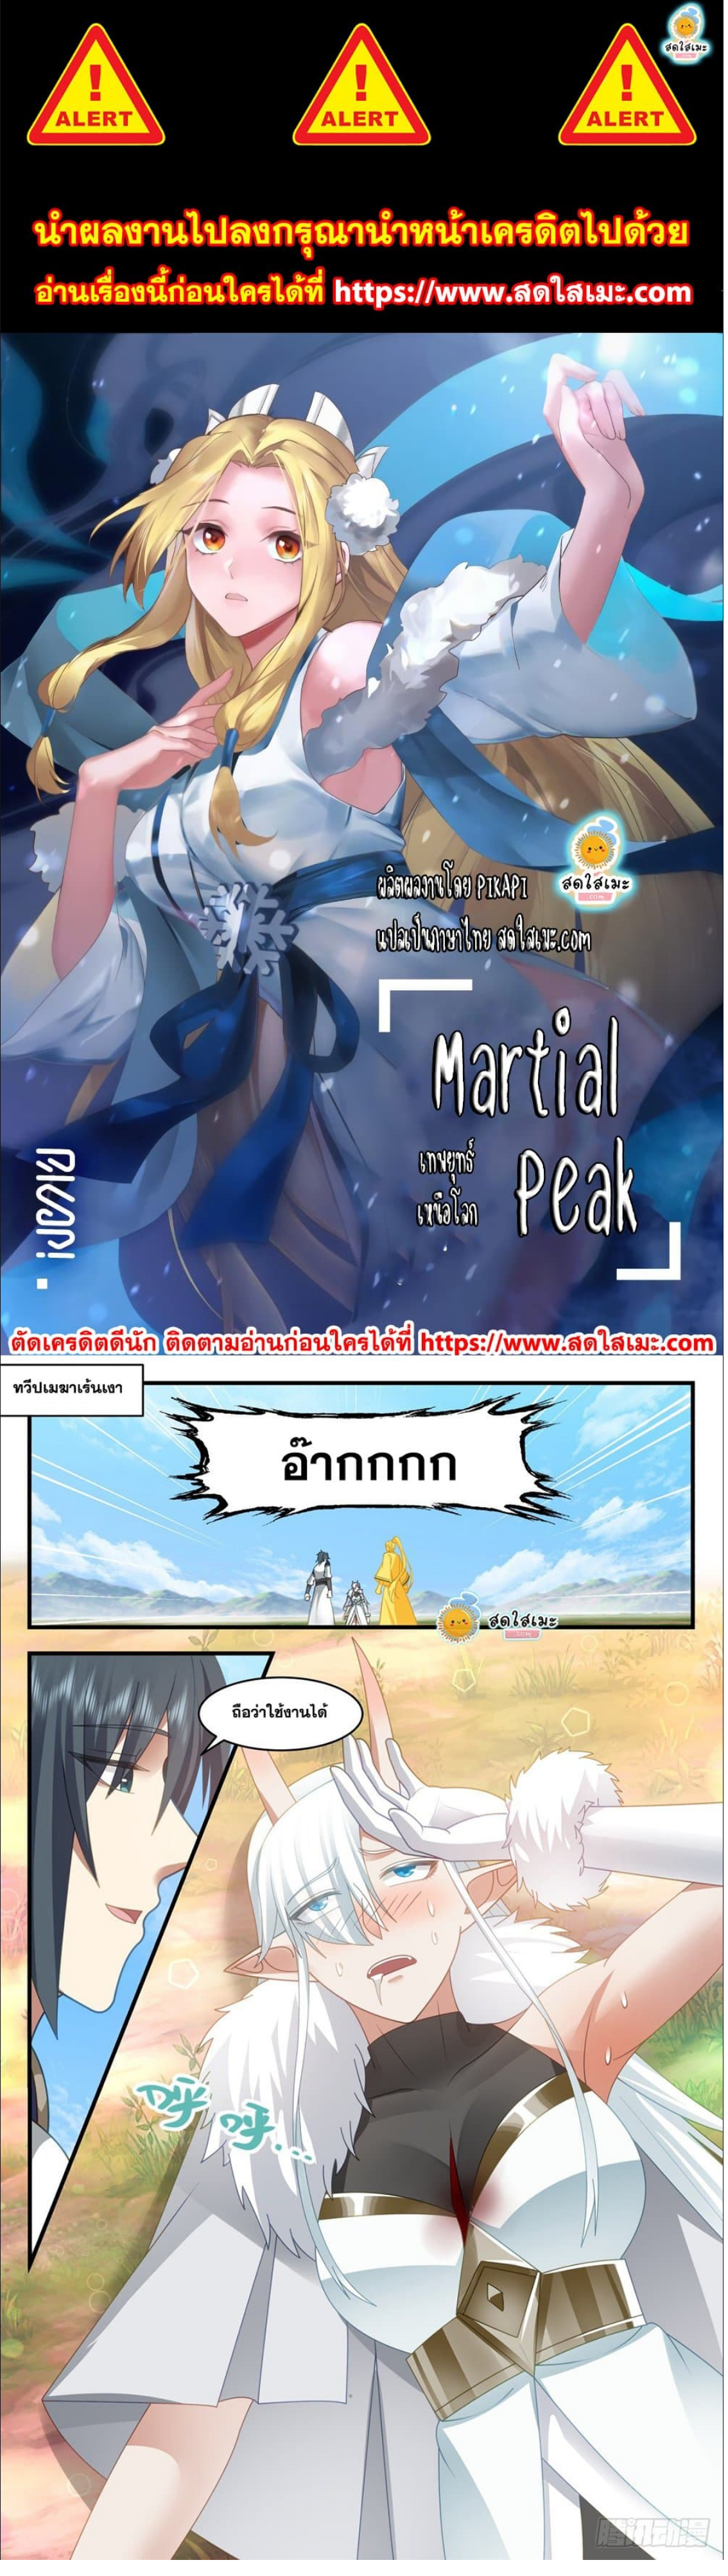 Martial-Peak---2440-1.png